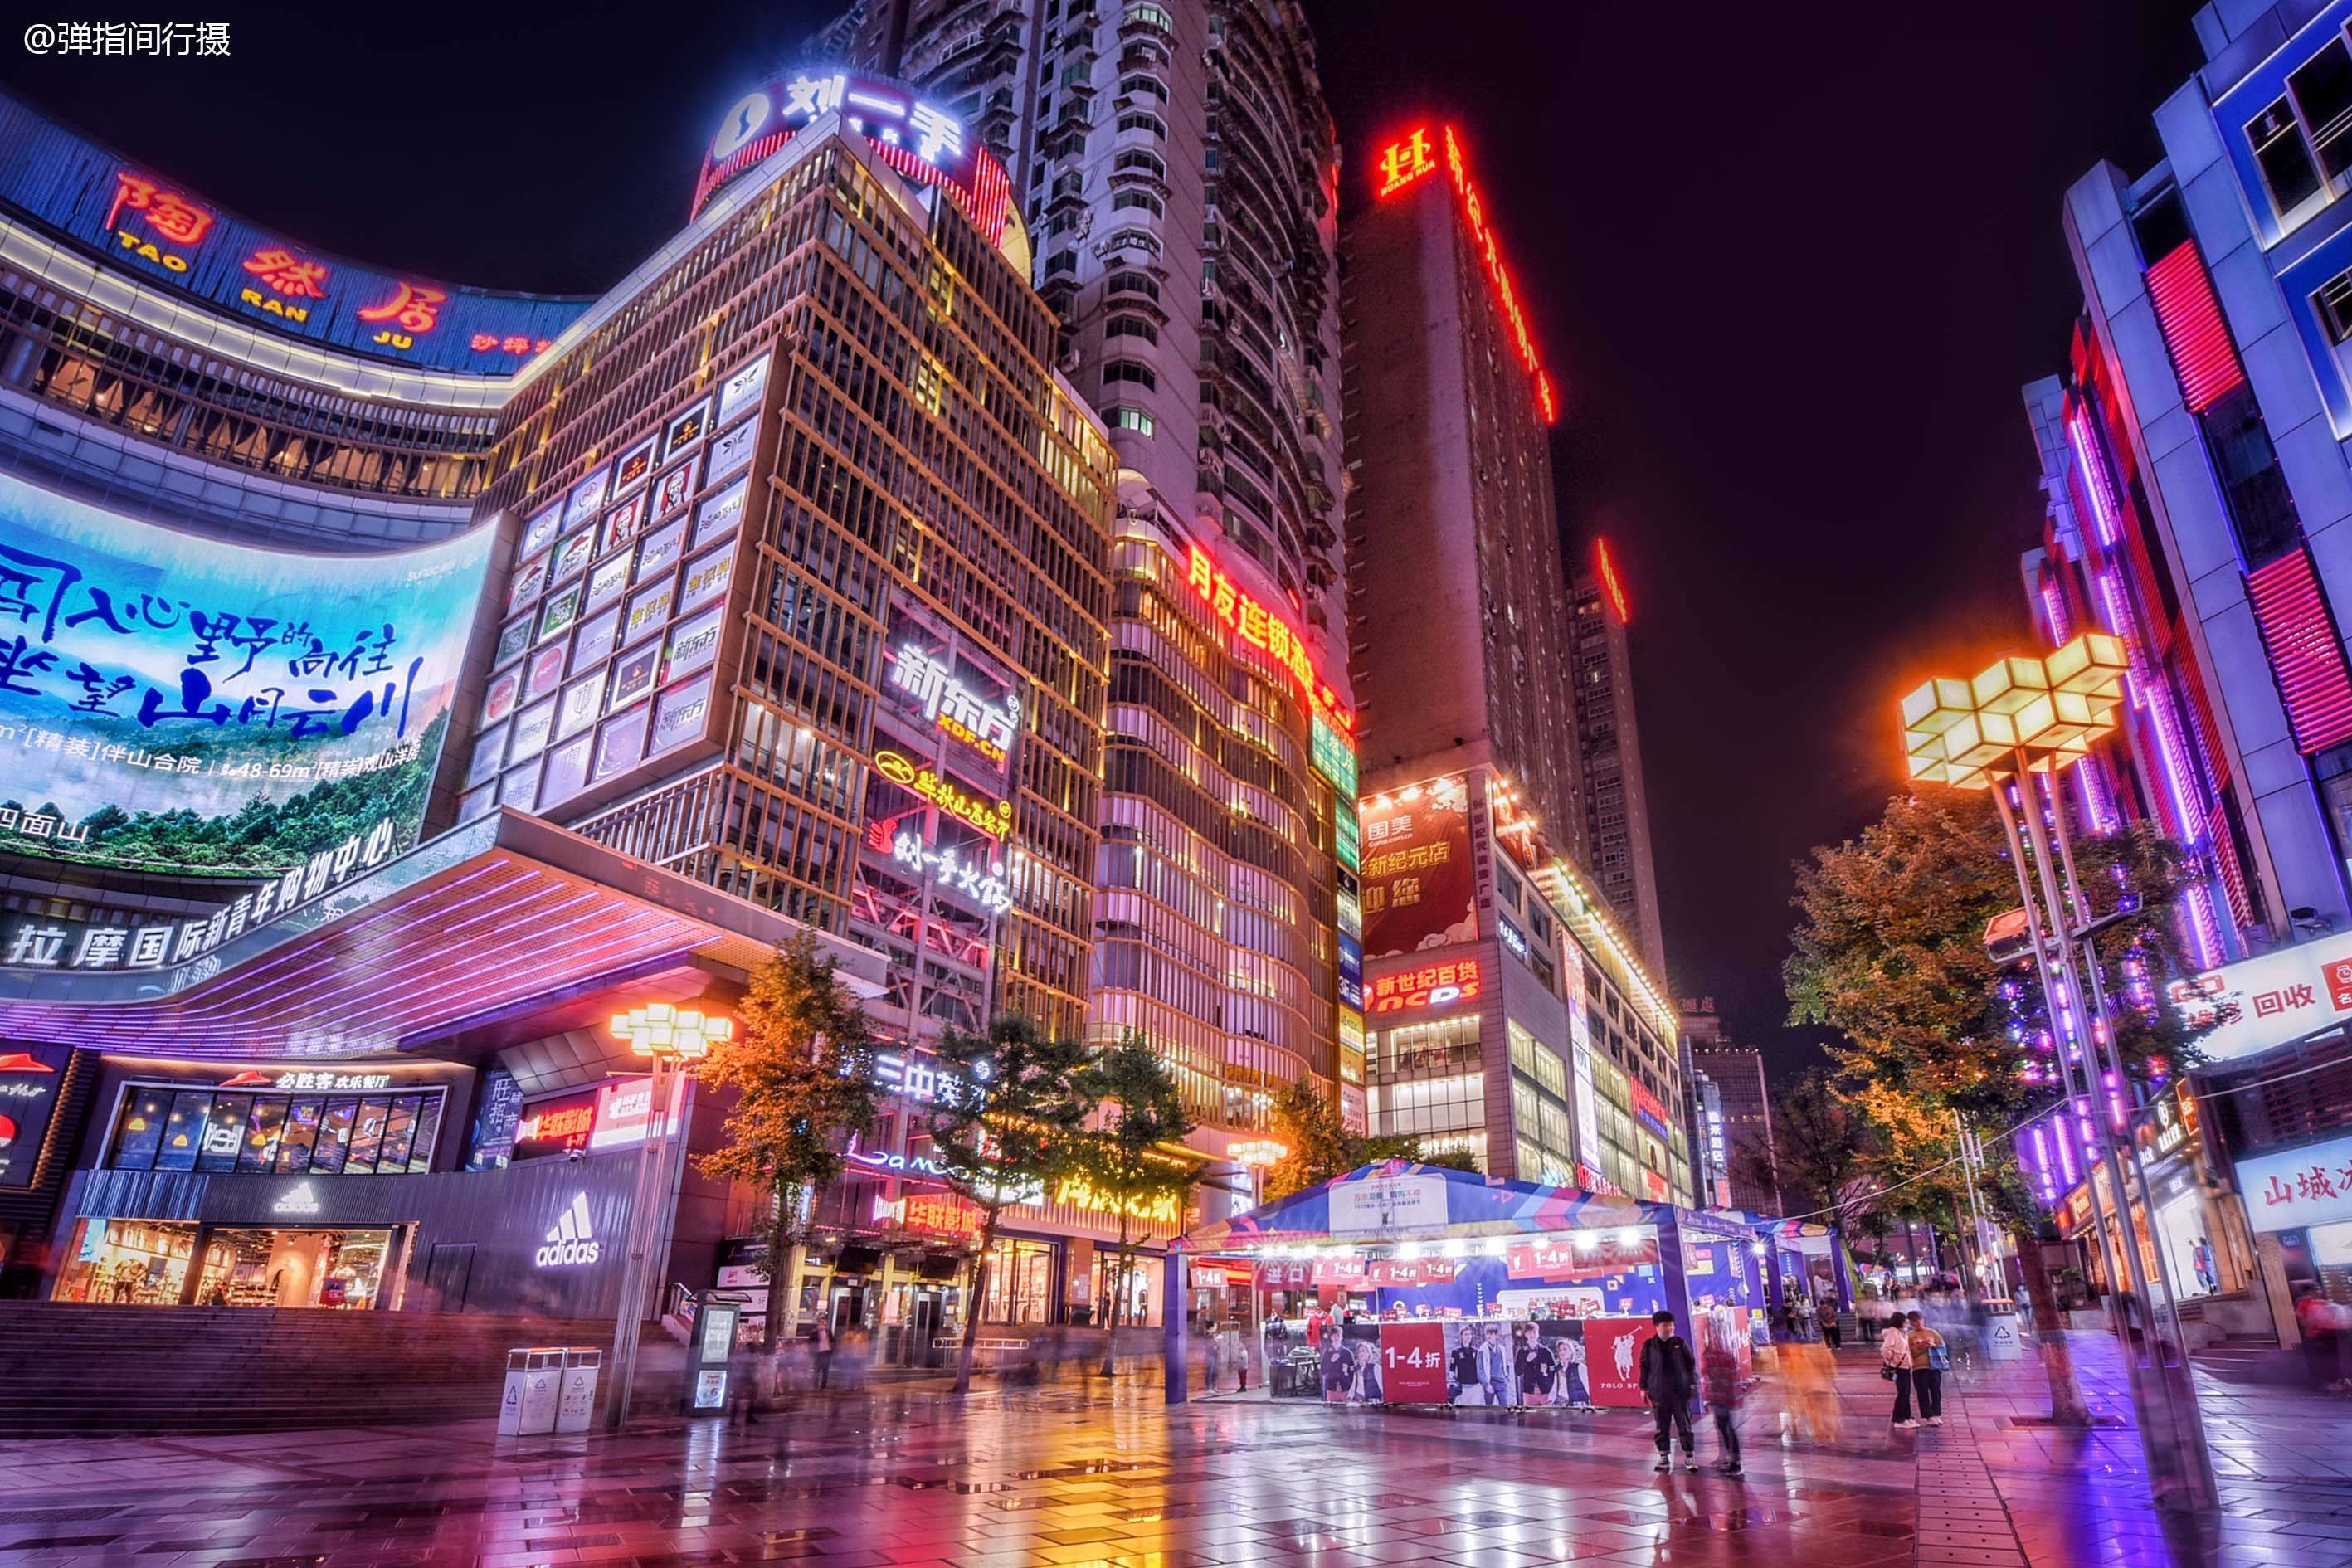 重庆最大的城市广场夜生活精彩纷呈市民和游客皆爱的打卡地